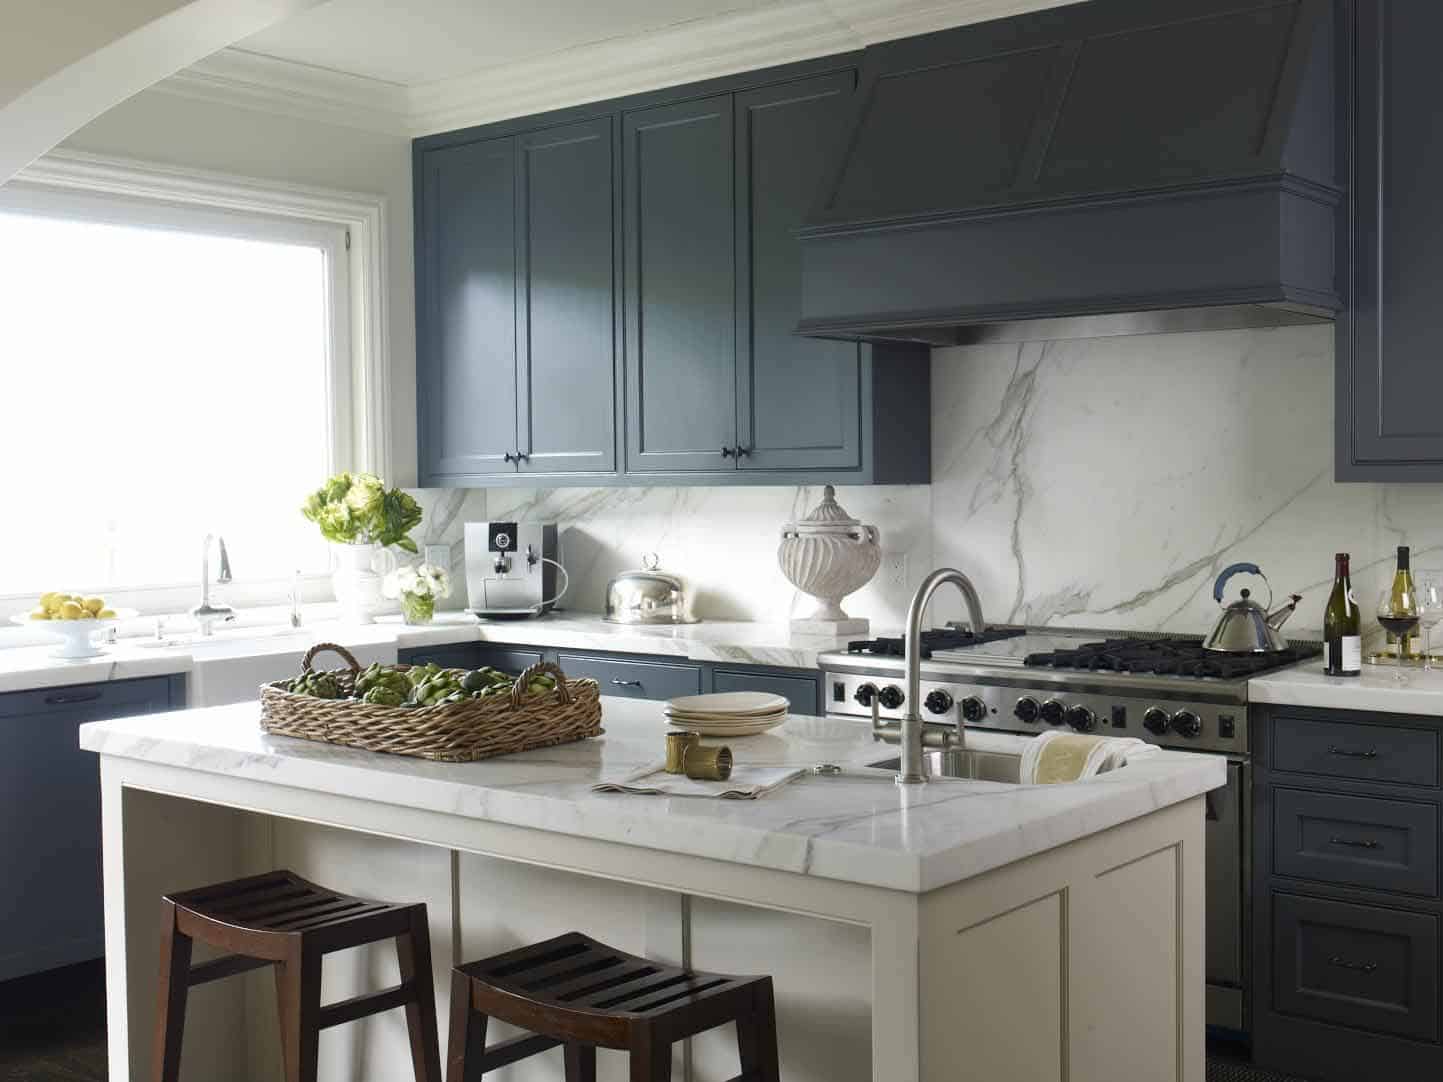 Download Contoh desain dapur warna biru klasik - Thegorbalsla